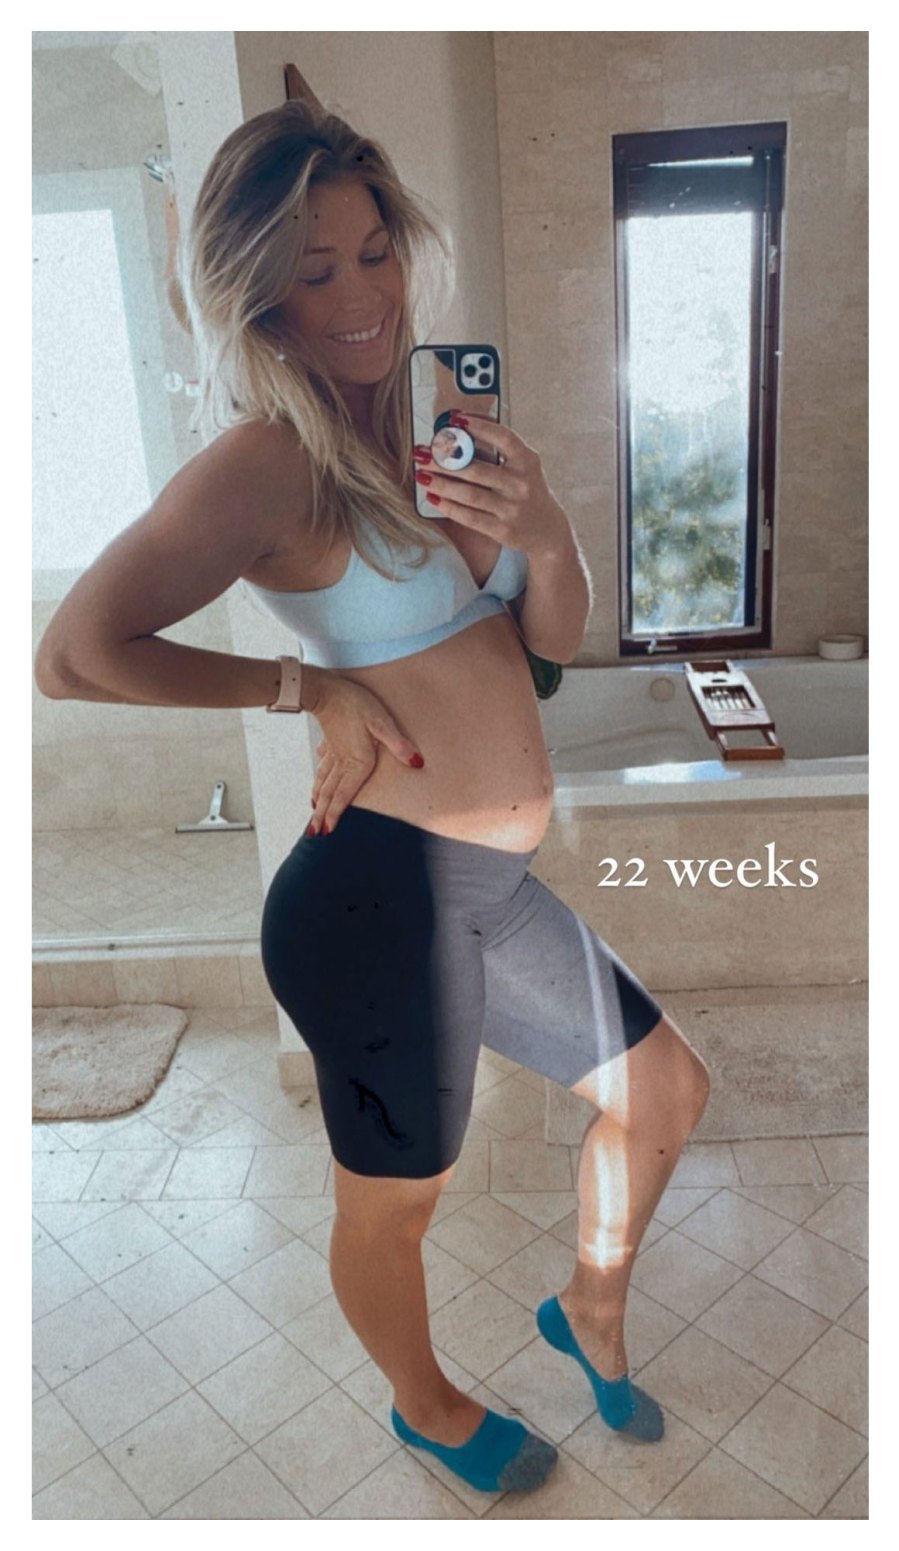 BiP Krystal Nielson Pregnancy Baby Bump Blue Sports Bra 22 Weeks